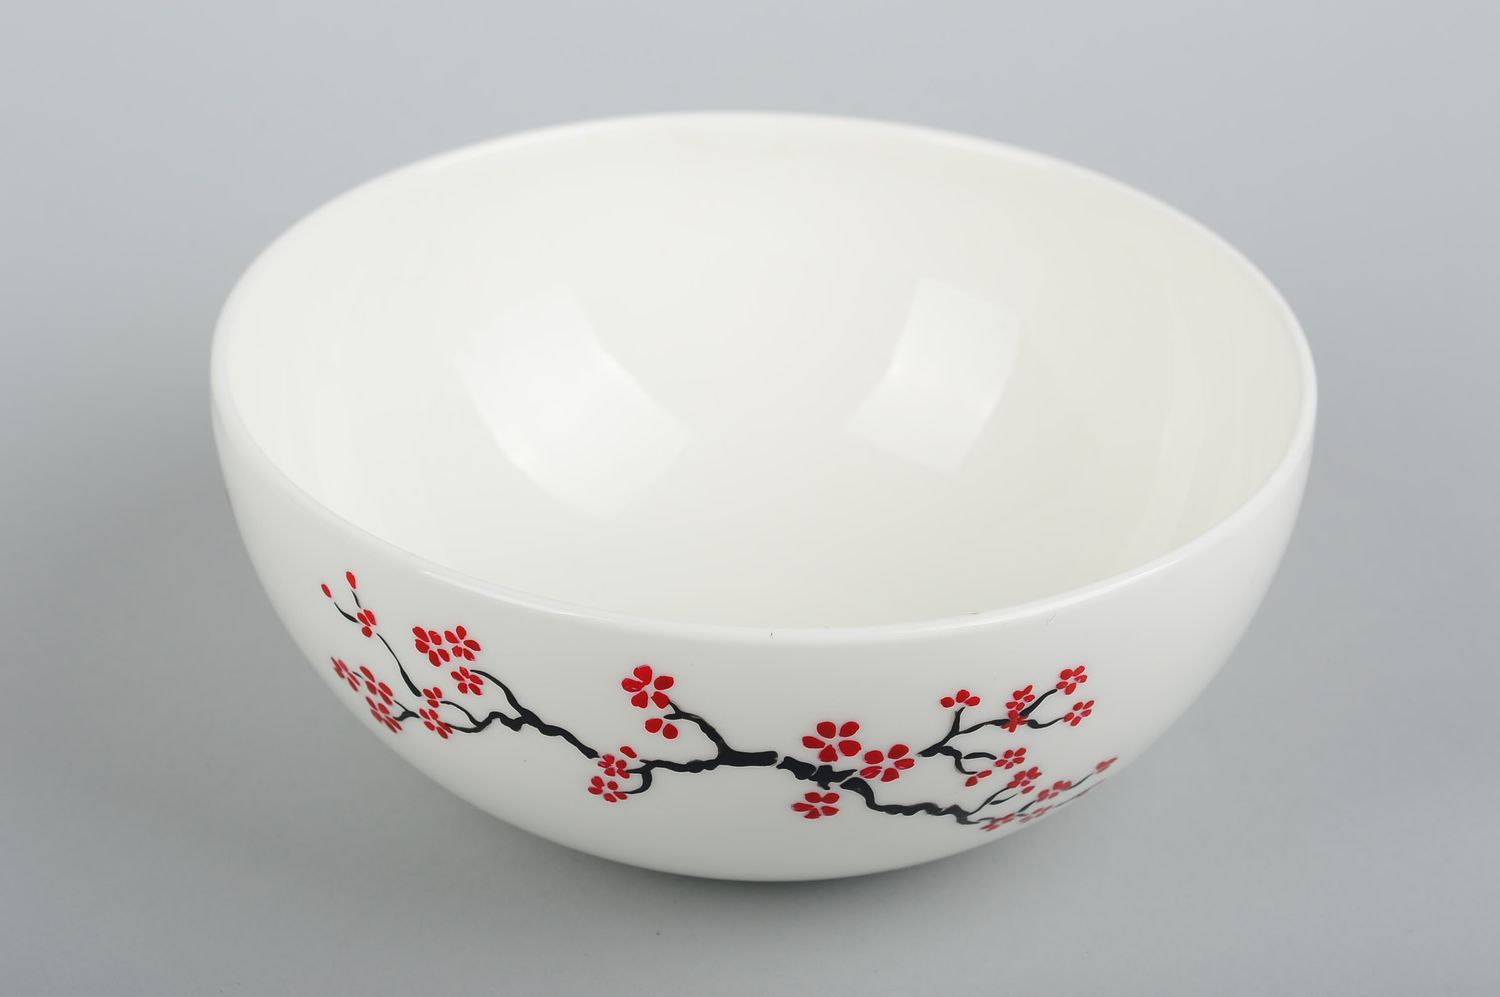 Глубокая тарелка ручной работы посуда для кухни с цветочками глиняная посуда фото 4